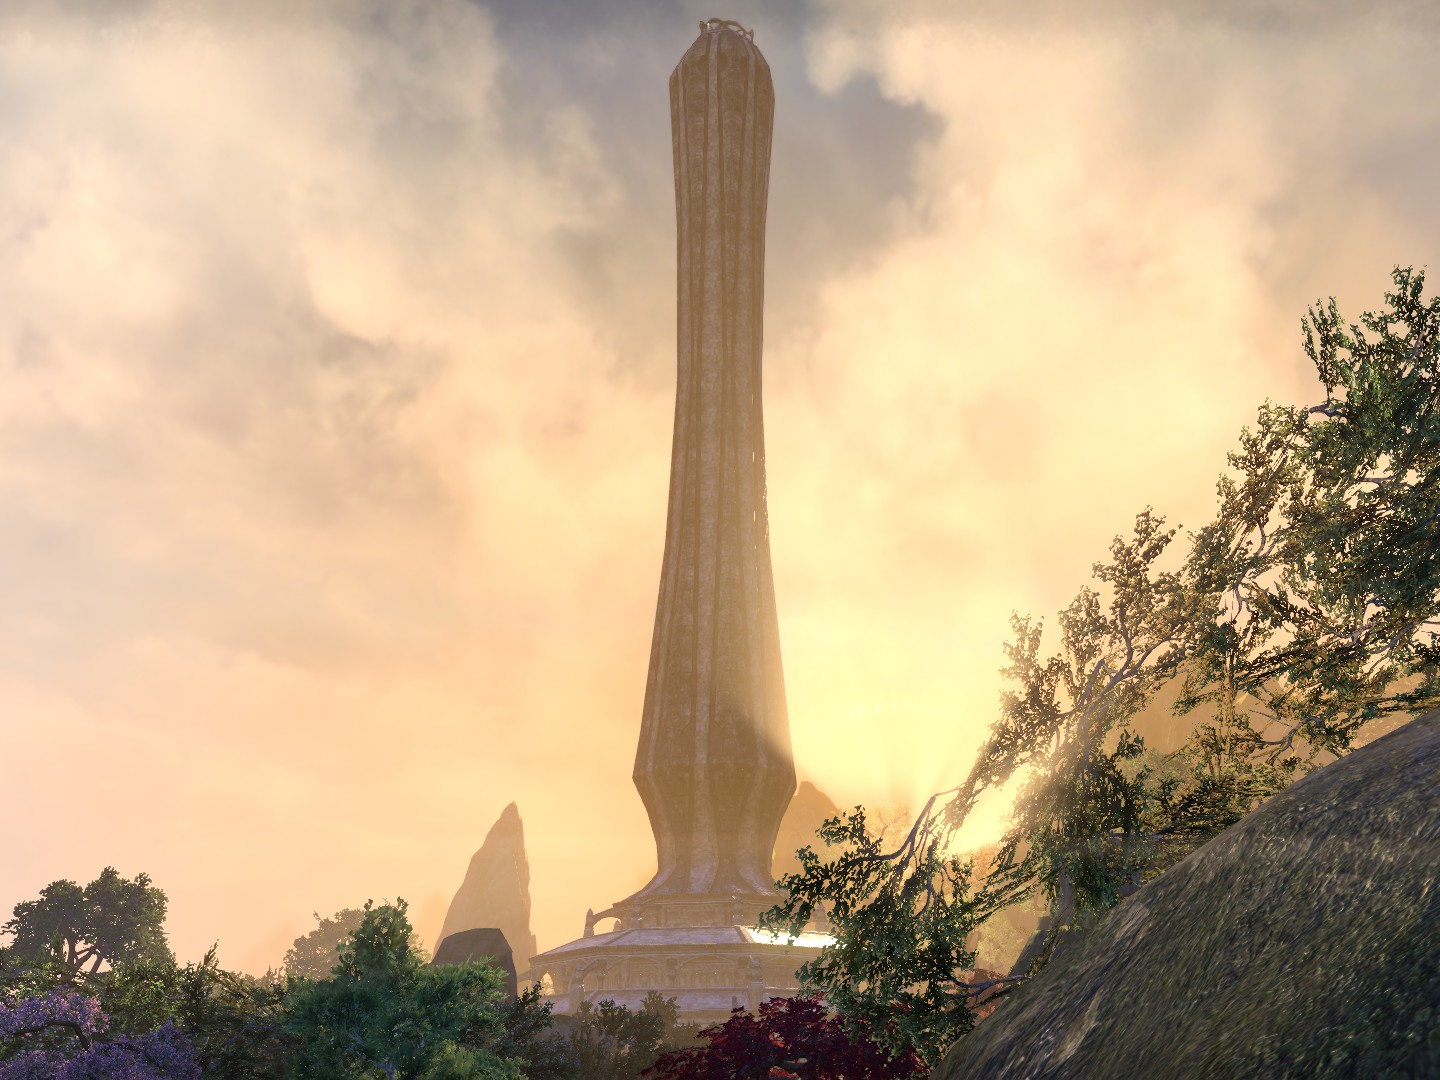 Amon crystal tower